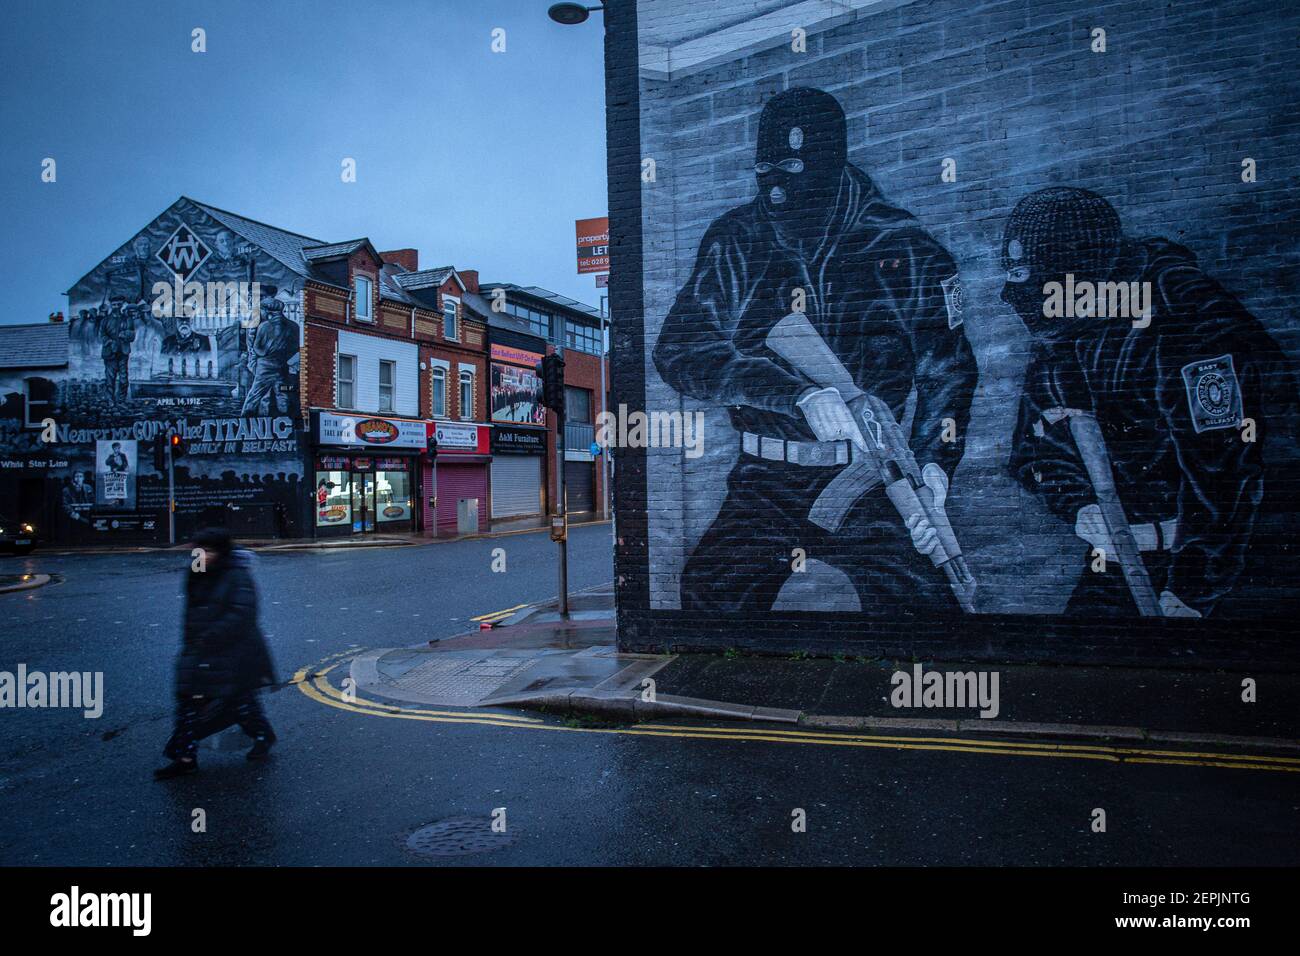 BELFAST, IRLANDA DEL NORD - Febbraio, 23: Una donna passa davanti a un murale paramilitare lealista sulla strada Newtownards il 23 febbraio 2021 a Belfast. Foto Stock